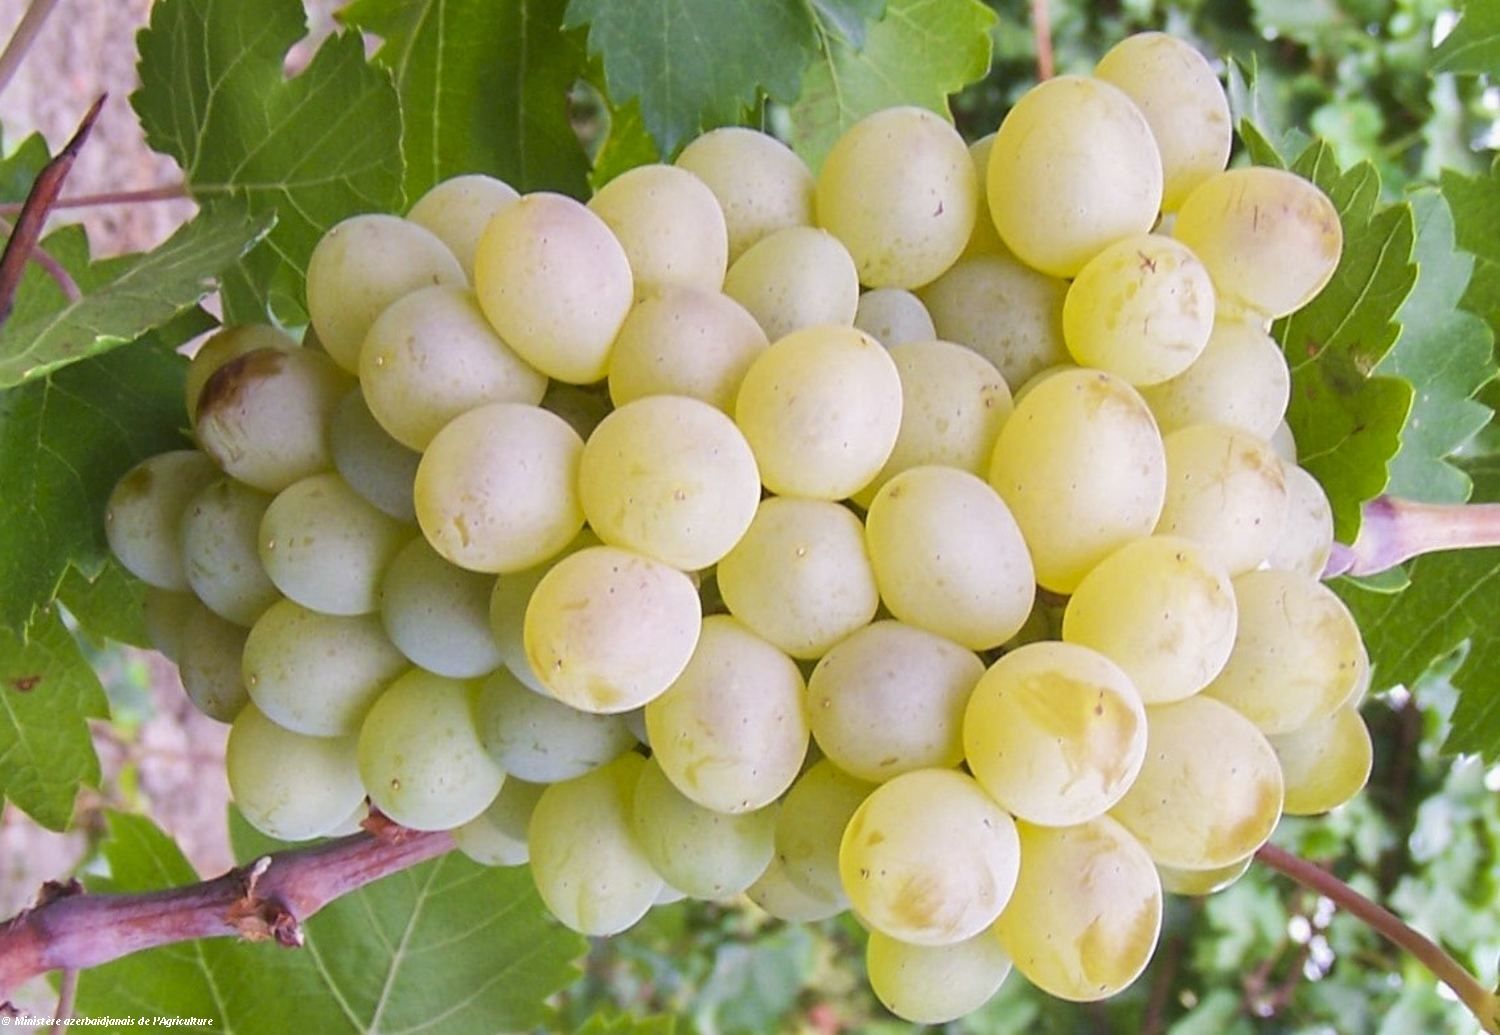 Une nouvelle variété de raisin a été cultivée en Azerbaïdjan